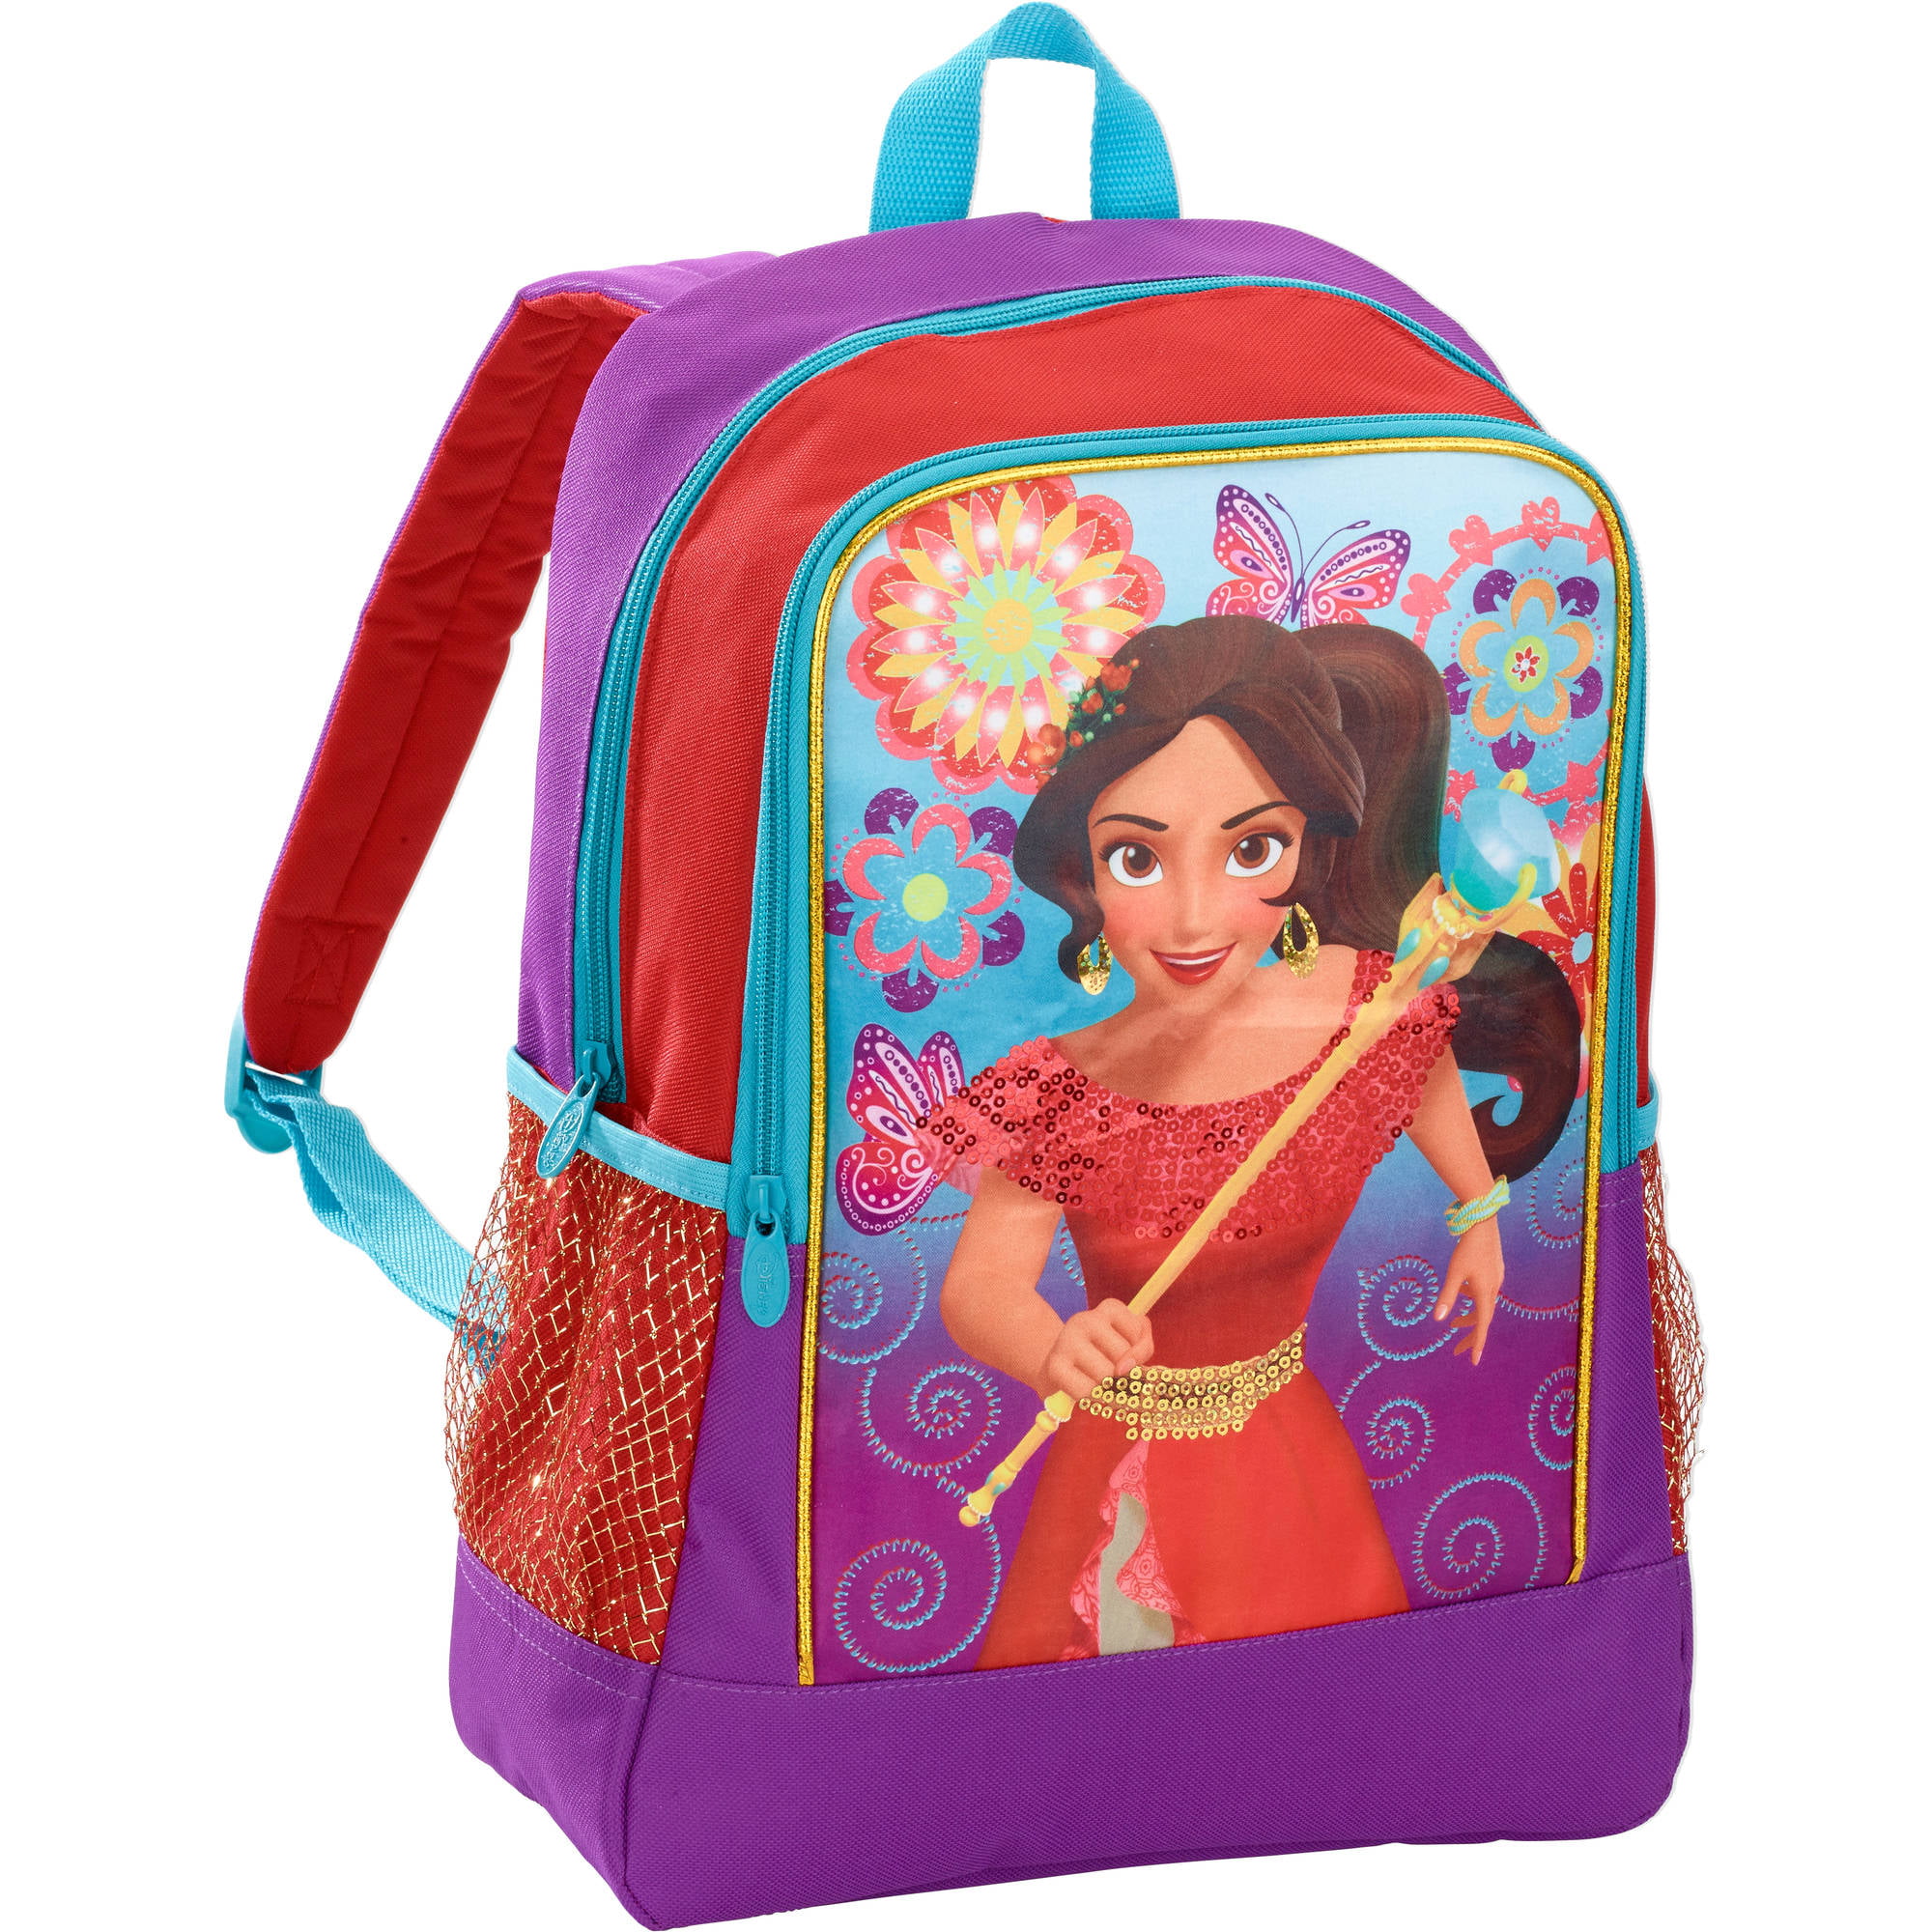 Disney Elena of Avalor 16" Large Backpack School Bag Girls Bag 